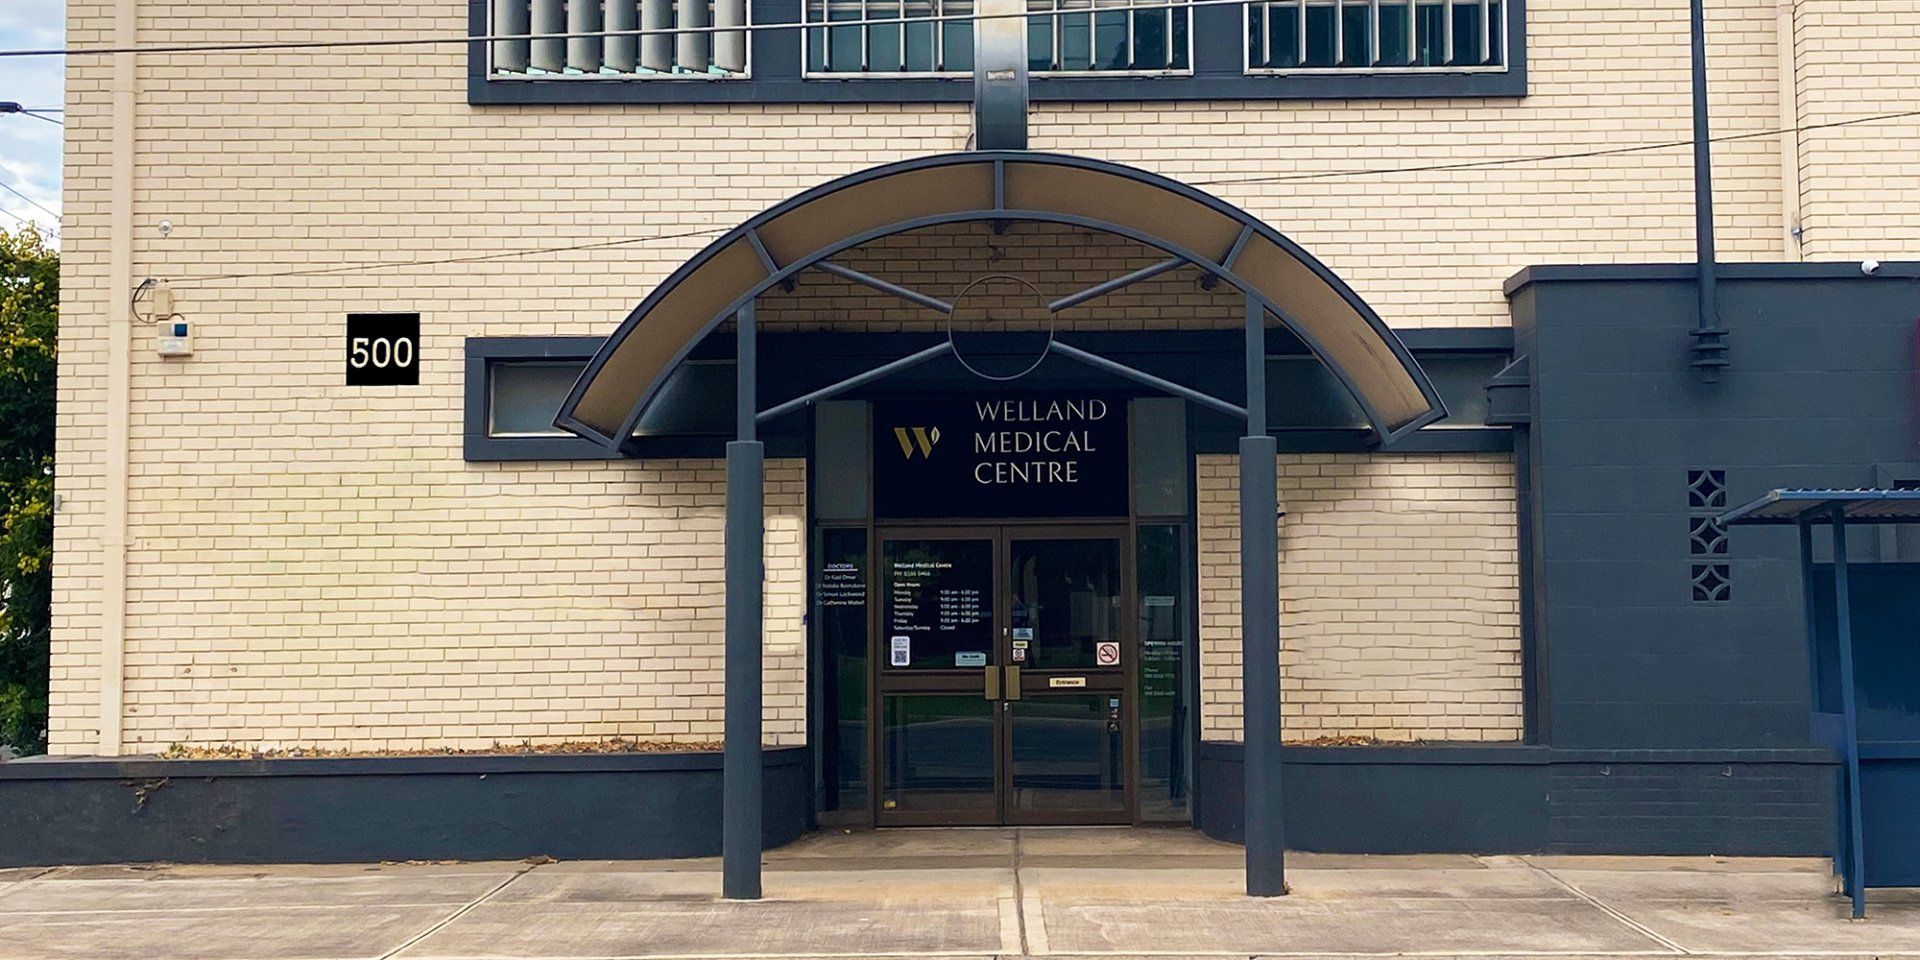 Welland Medical Centre Front Entrance